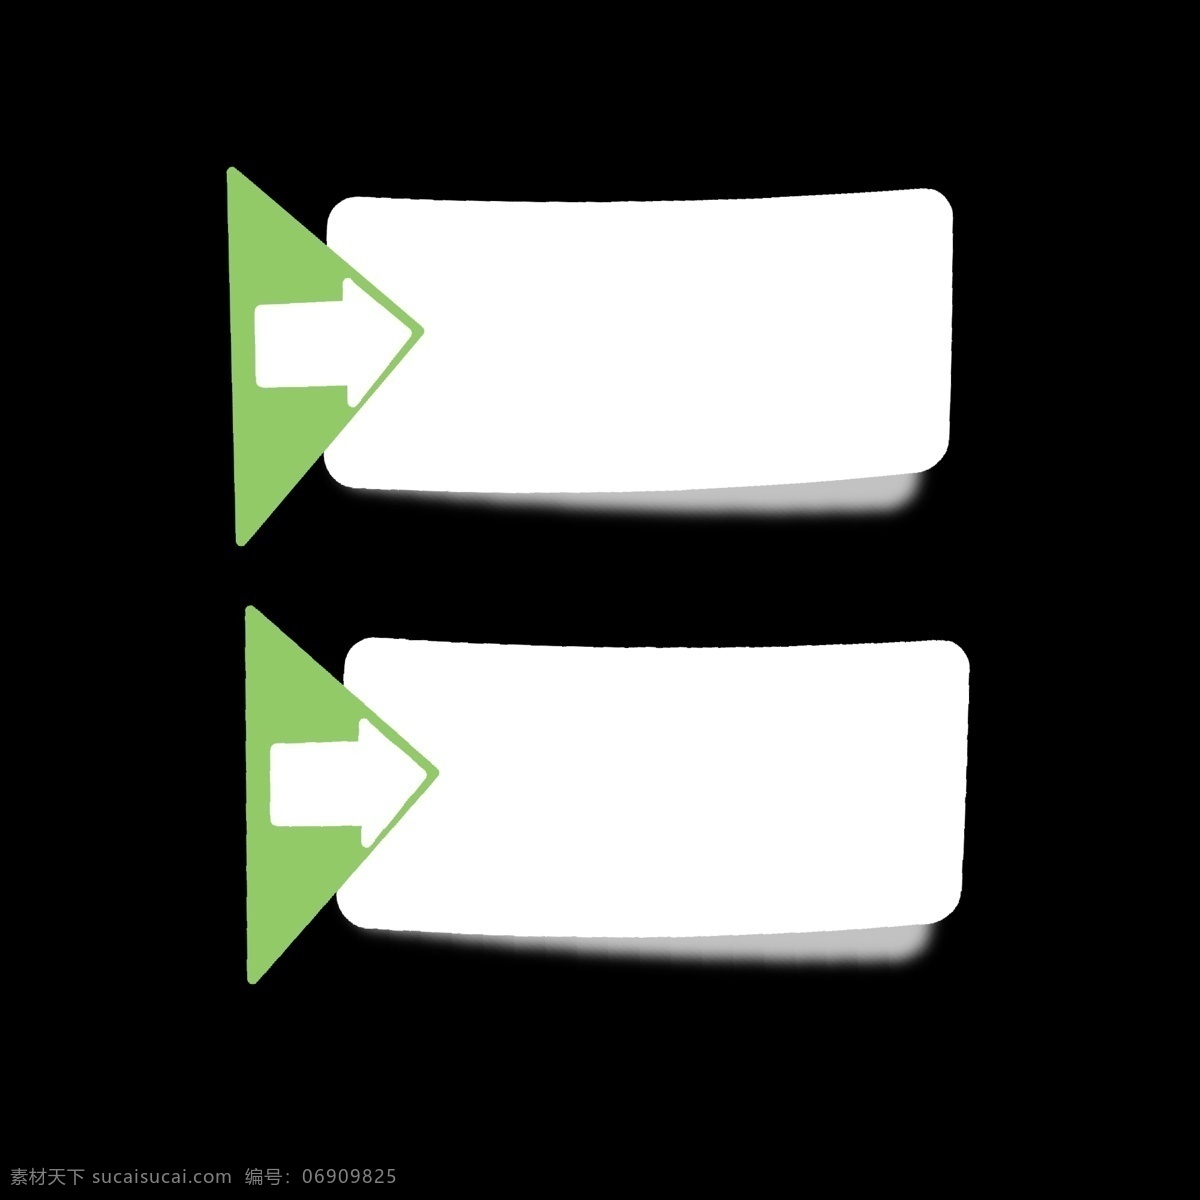 绿色 白色 箭头 分类 图标 分开 简洁 简约 简单 卡通 ppt专用 分别介绍模板 色块 几何形体